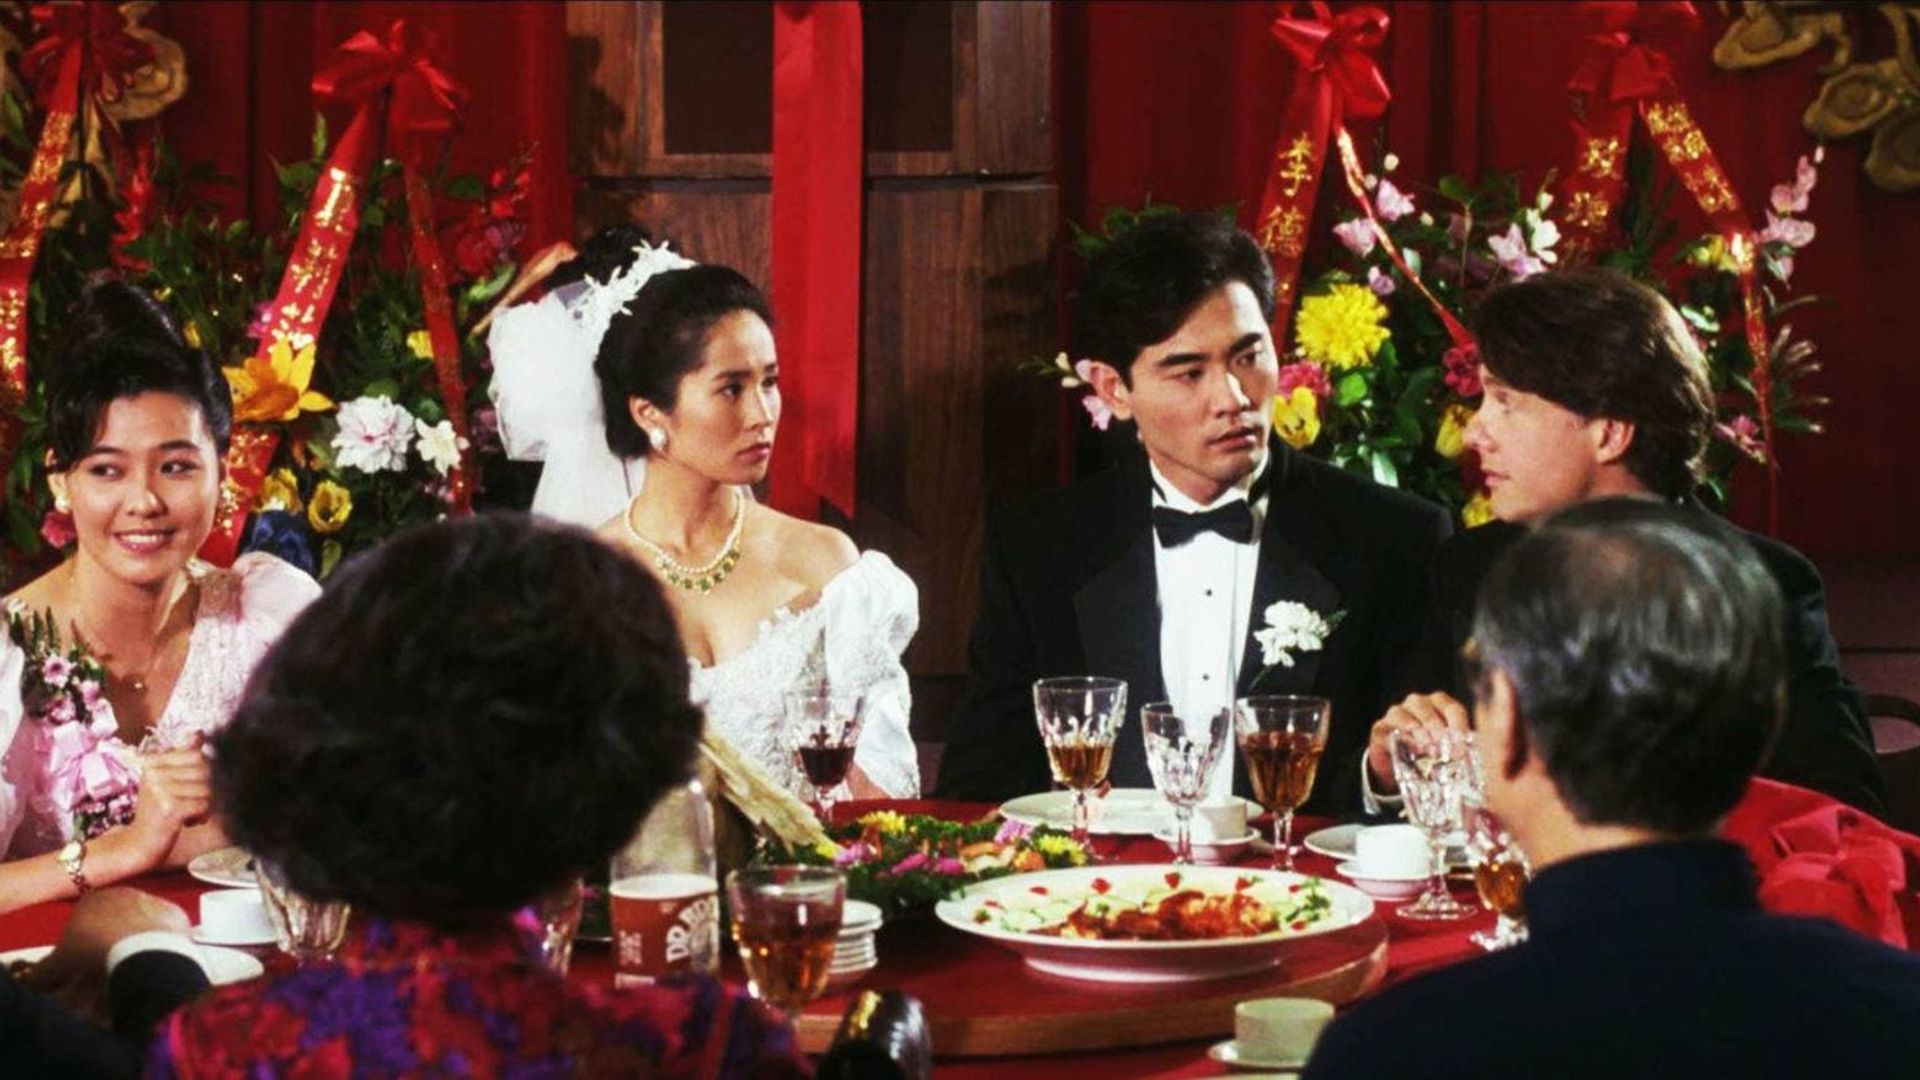 The Wedding Banquet background